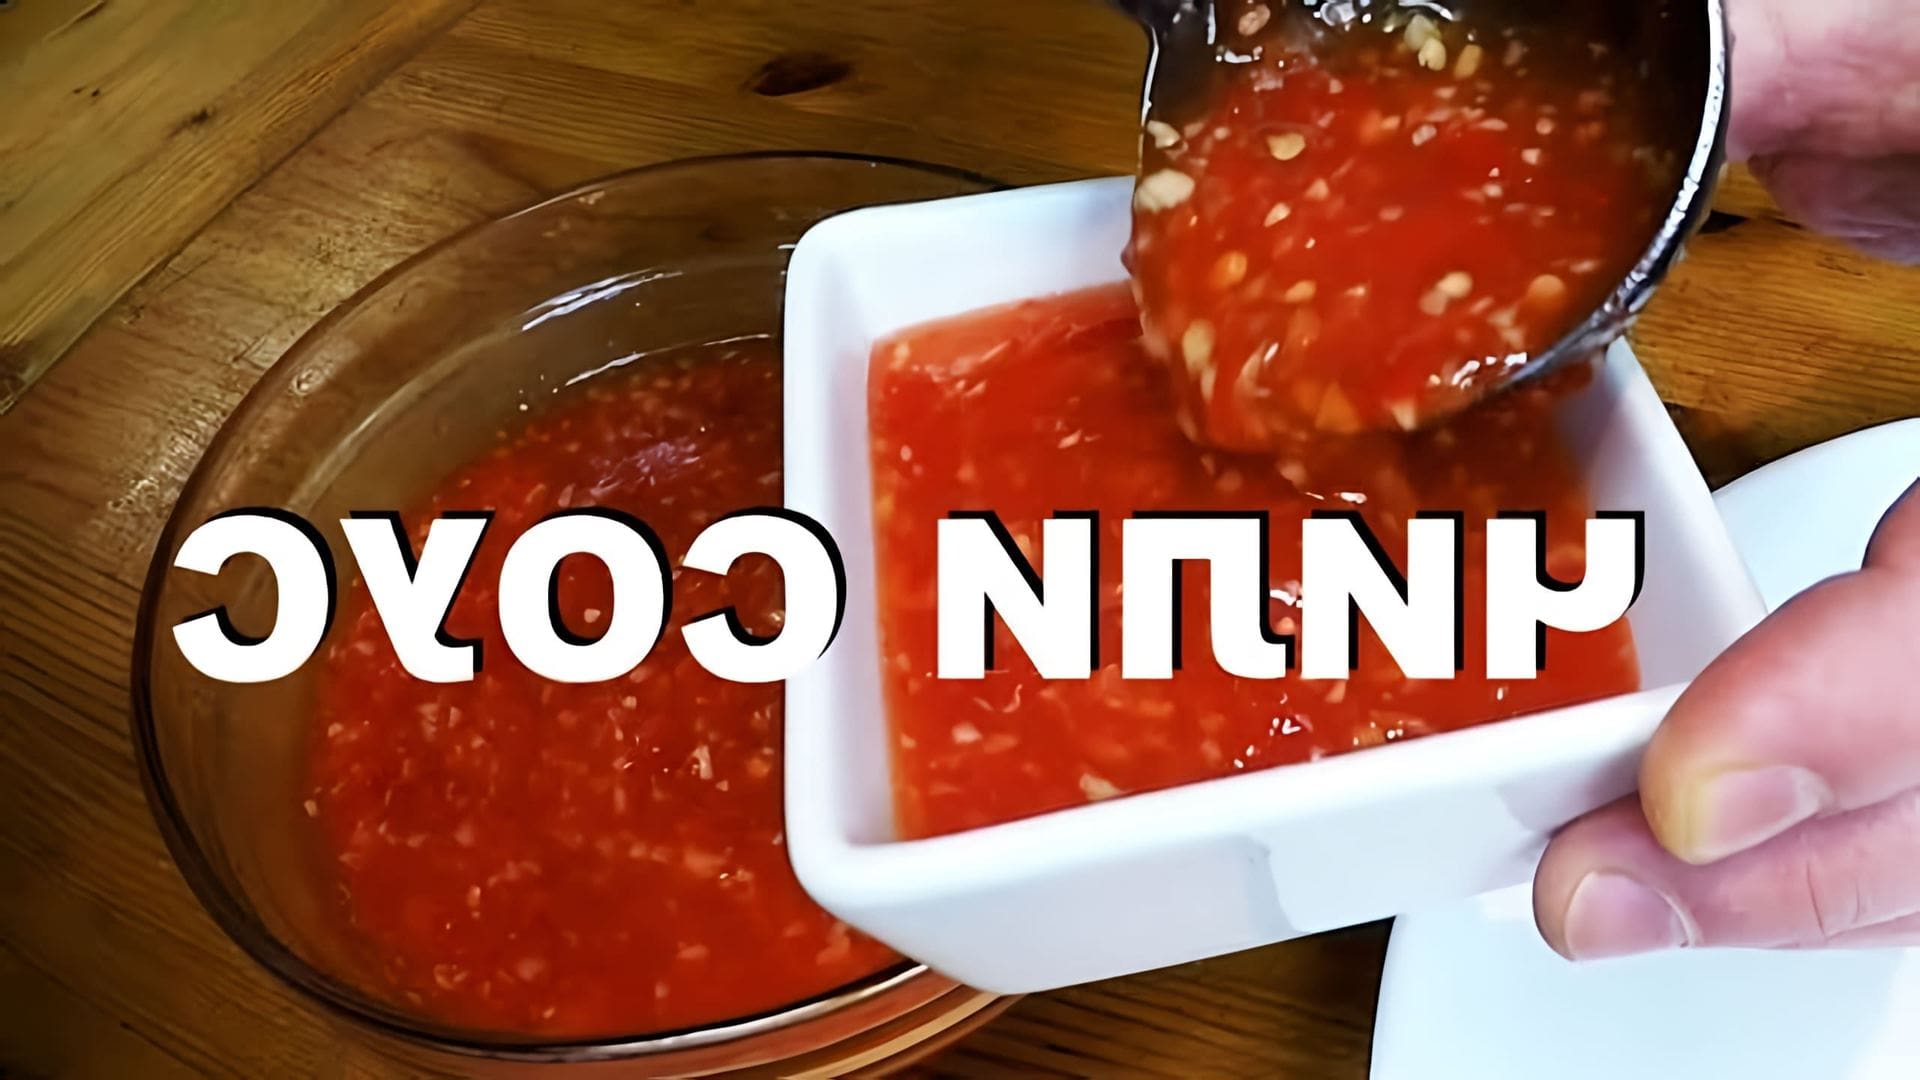 В этом видео демонстрируется рецепт приготовления тайского кисло-сладкого соуса чили, который идеально подходит для сервировки жареных блюд, включая луковые кольца